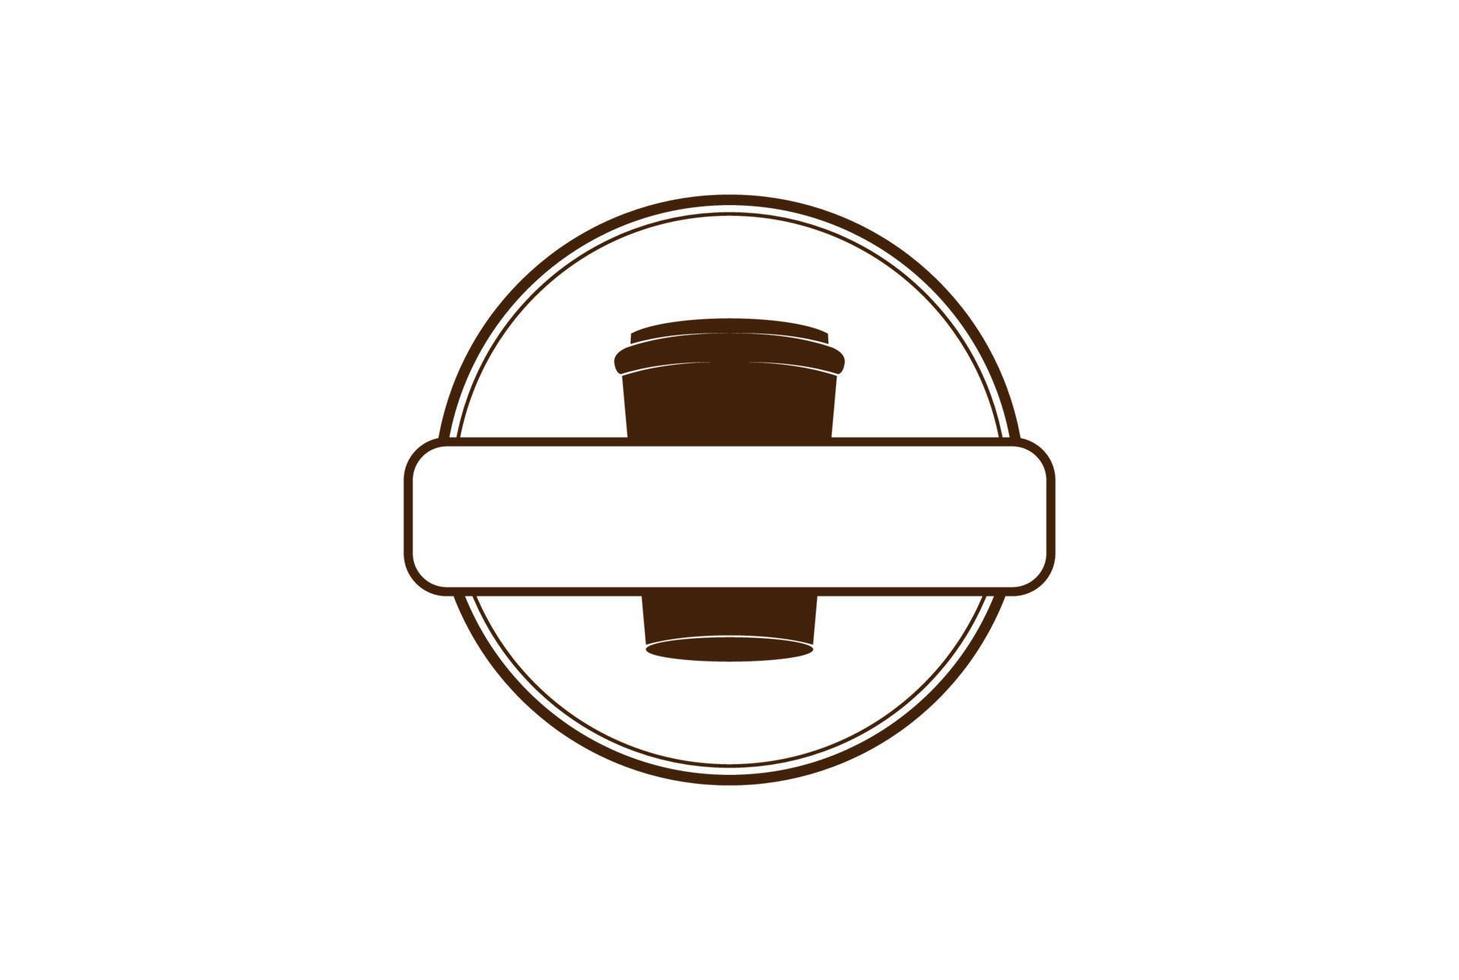 rétro vintage papier circulaire tasse à café insigne emblème timbre étiquette pour café bar restaurant logo design vecteur